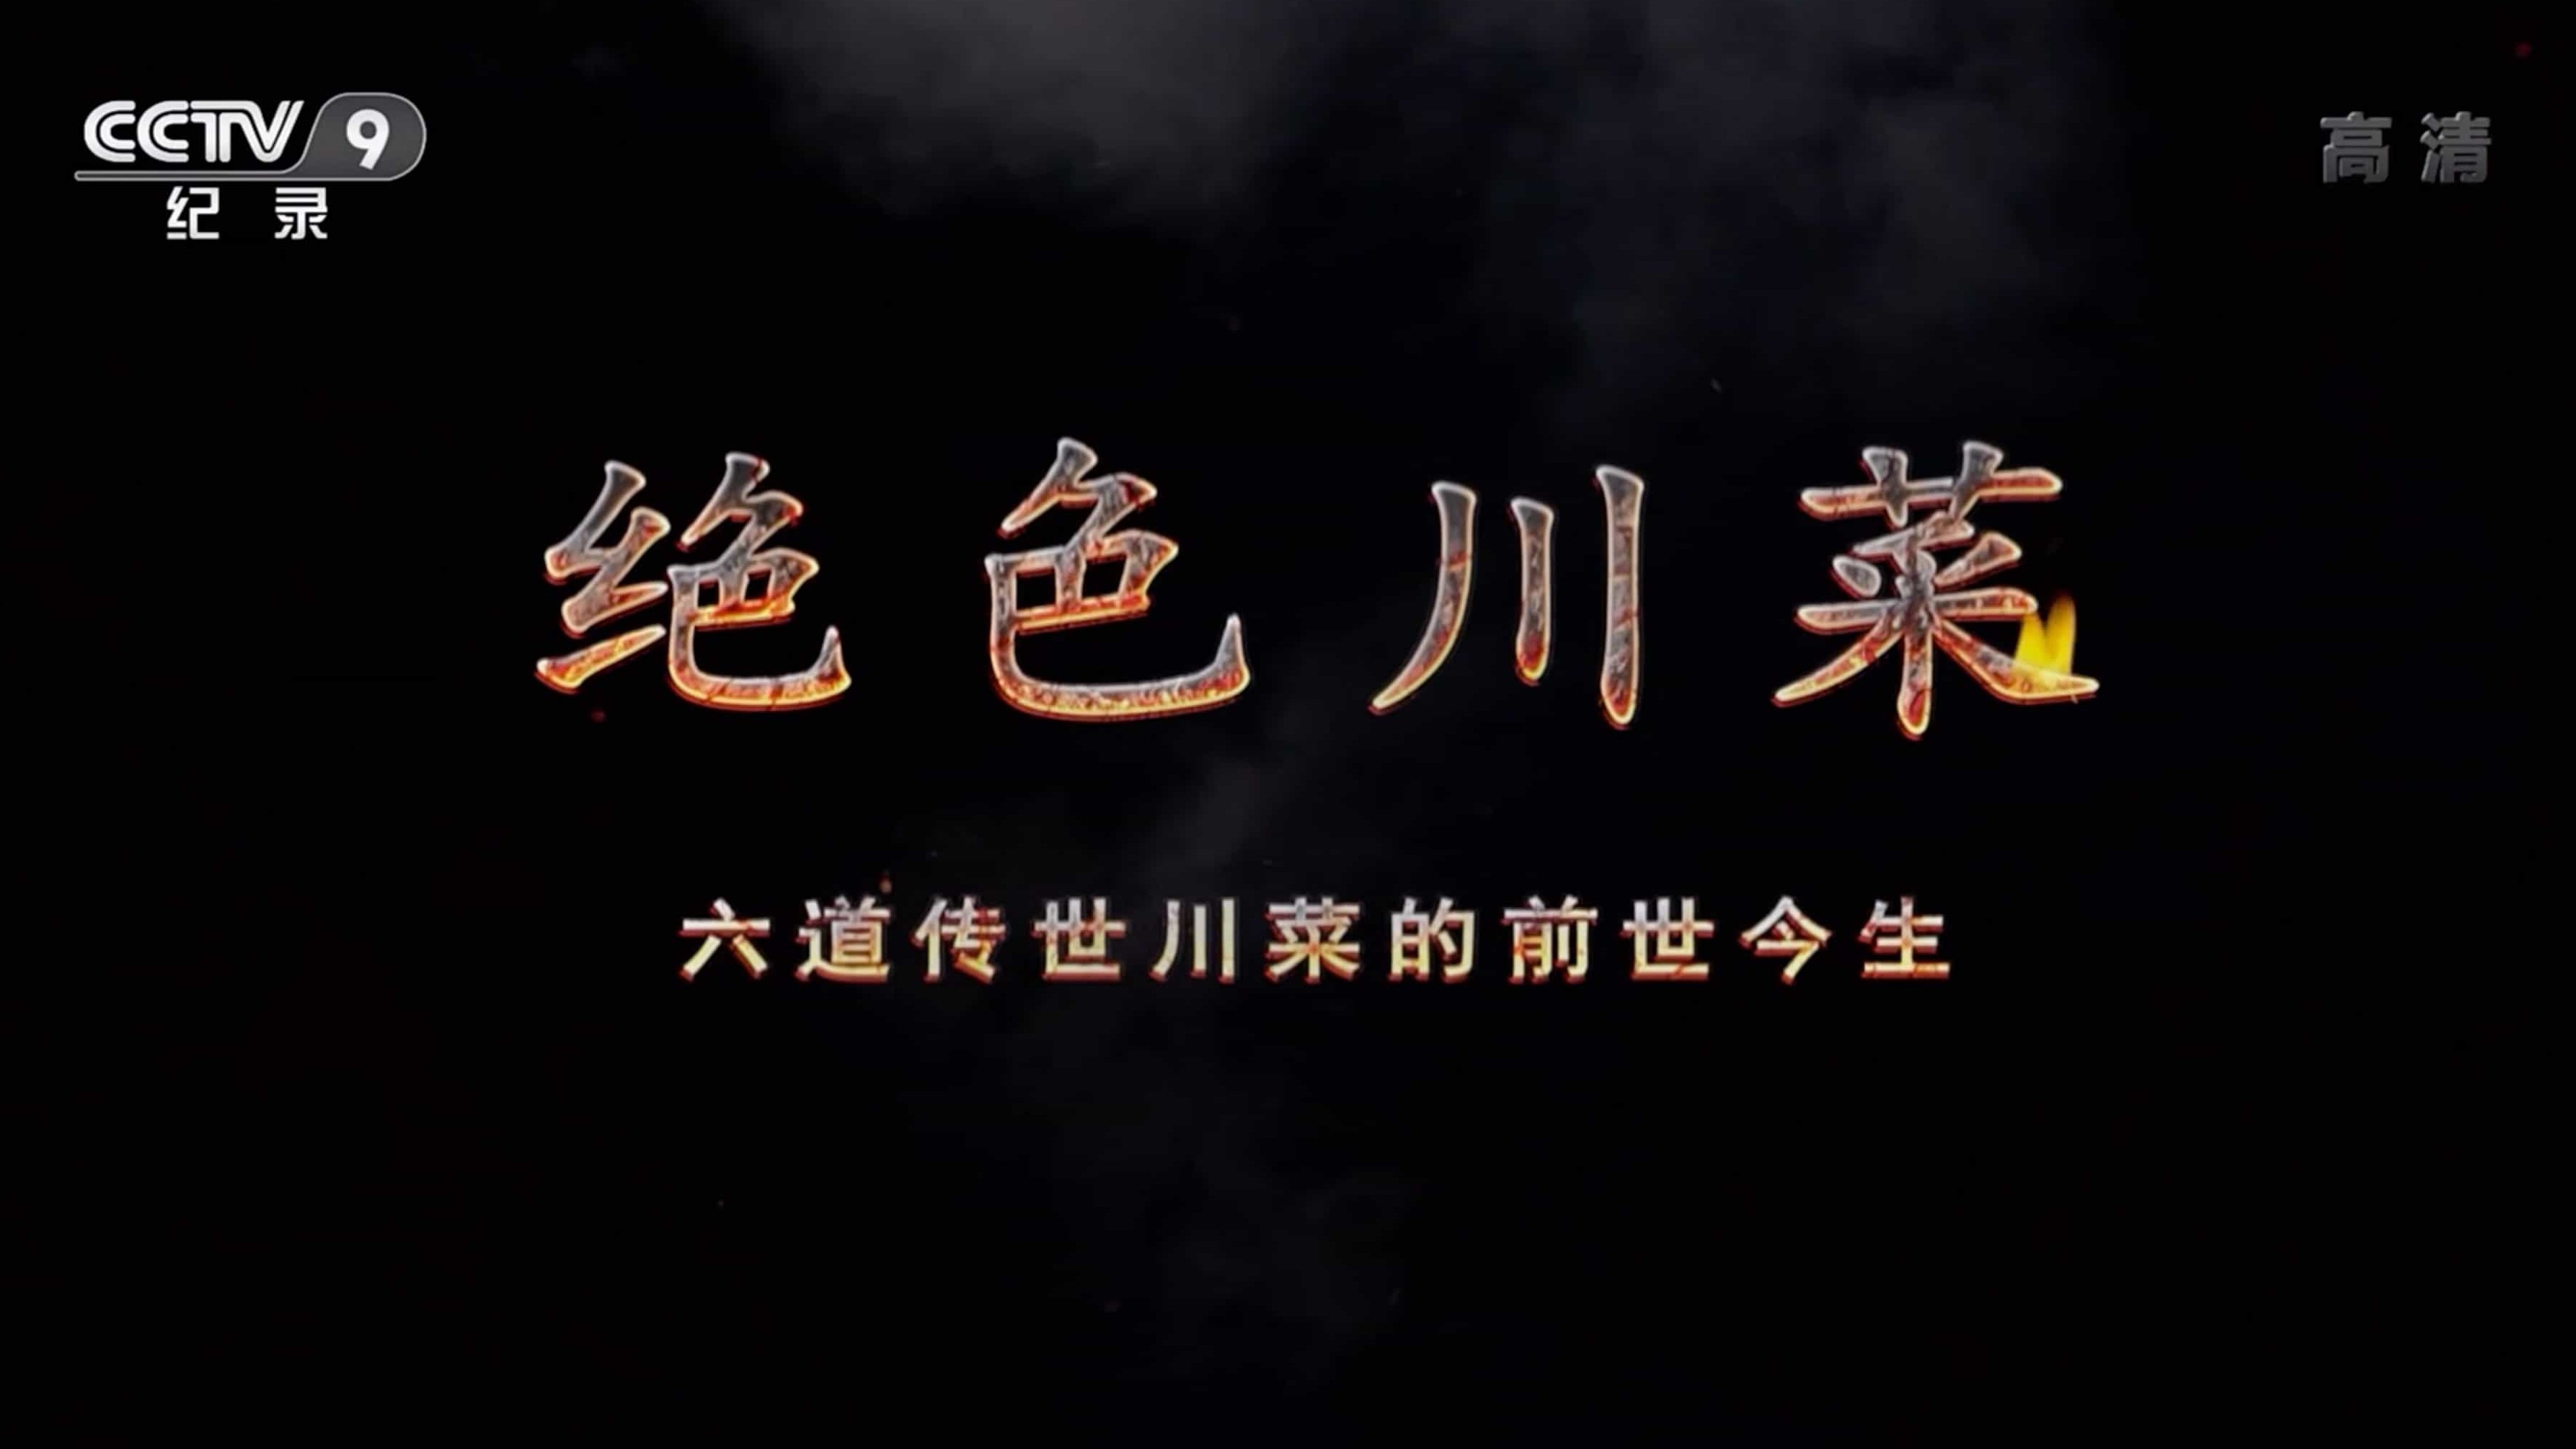 央视美食纪录片《绝色川菜 2020》 汉语中字 1080i